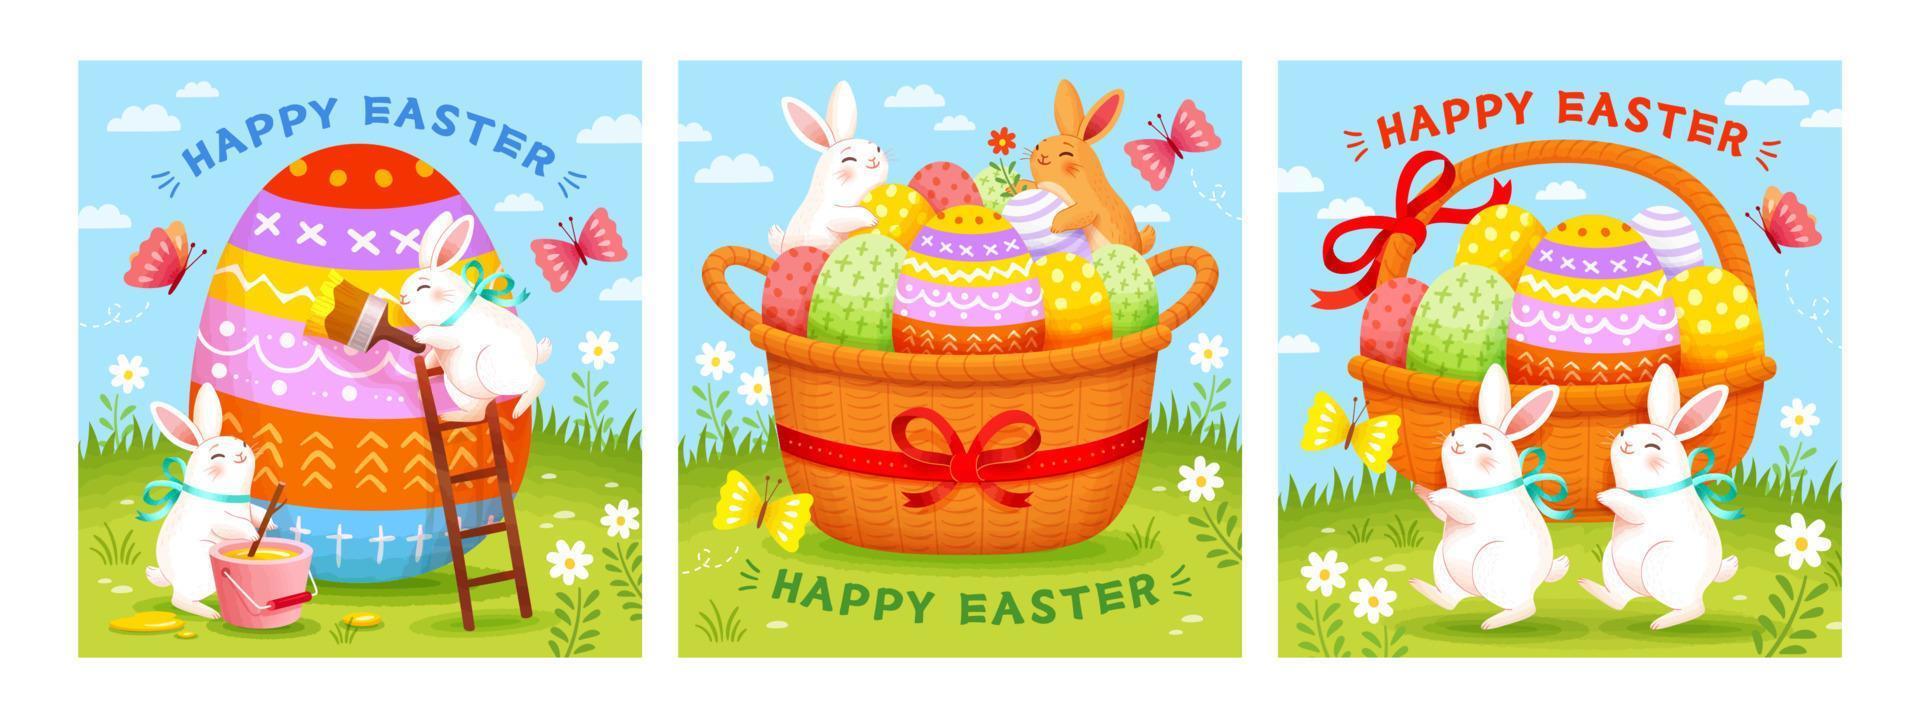 Pasen Sjablonen met schattig konijnen decoreren eieren en zetten hen in manden. vakantie achtergrond geschikt voor evenement uitnodiging of groet kaart. vector